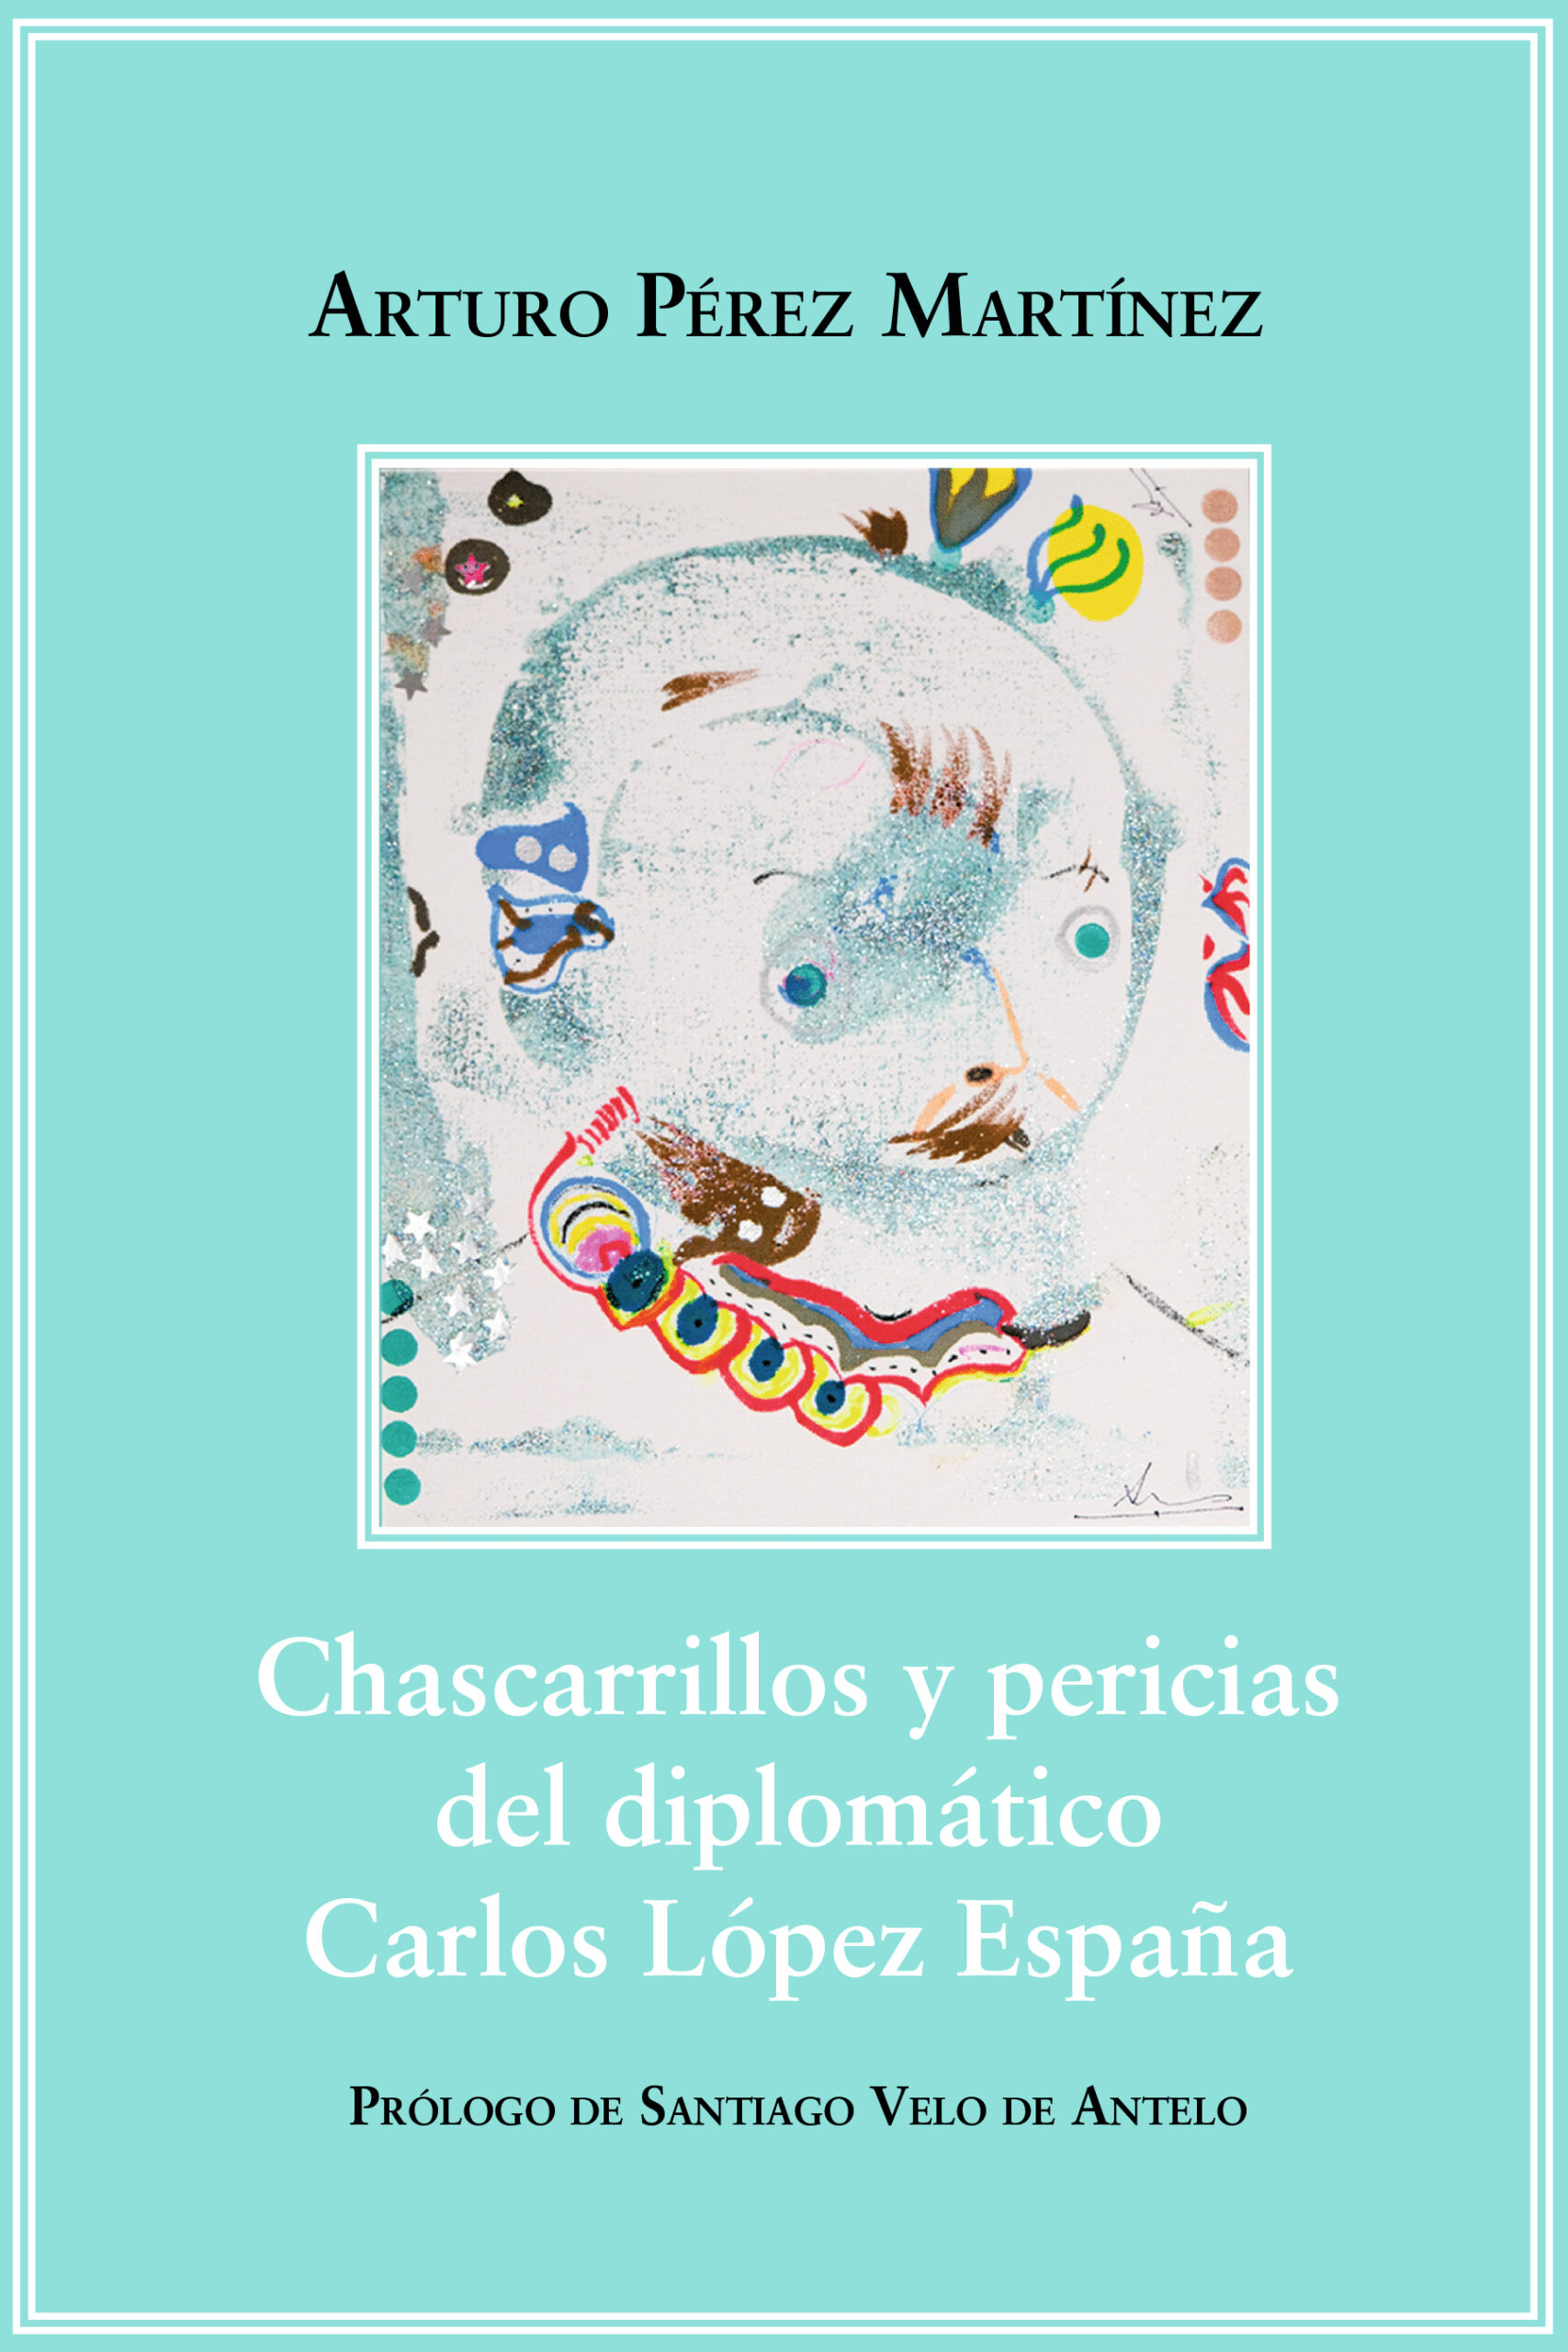 Chascarrillos y pericias del diplomático Carlos López España, de Arturo Pérez Martínez